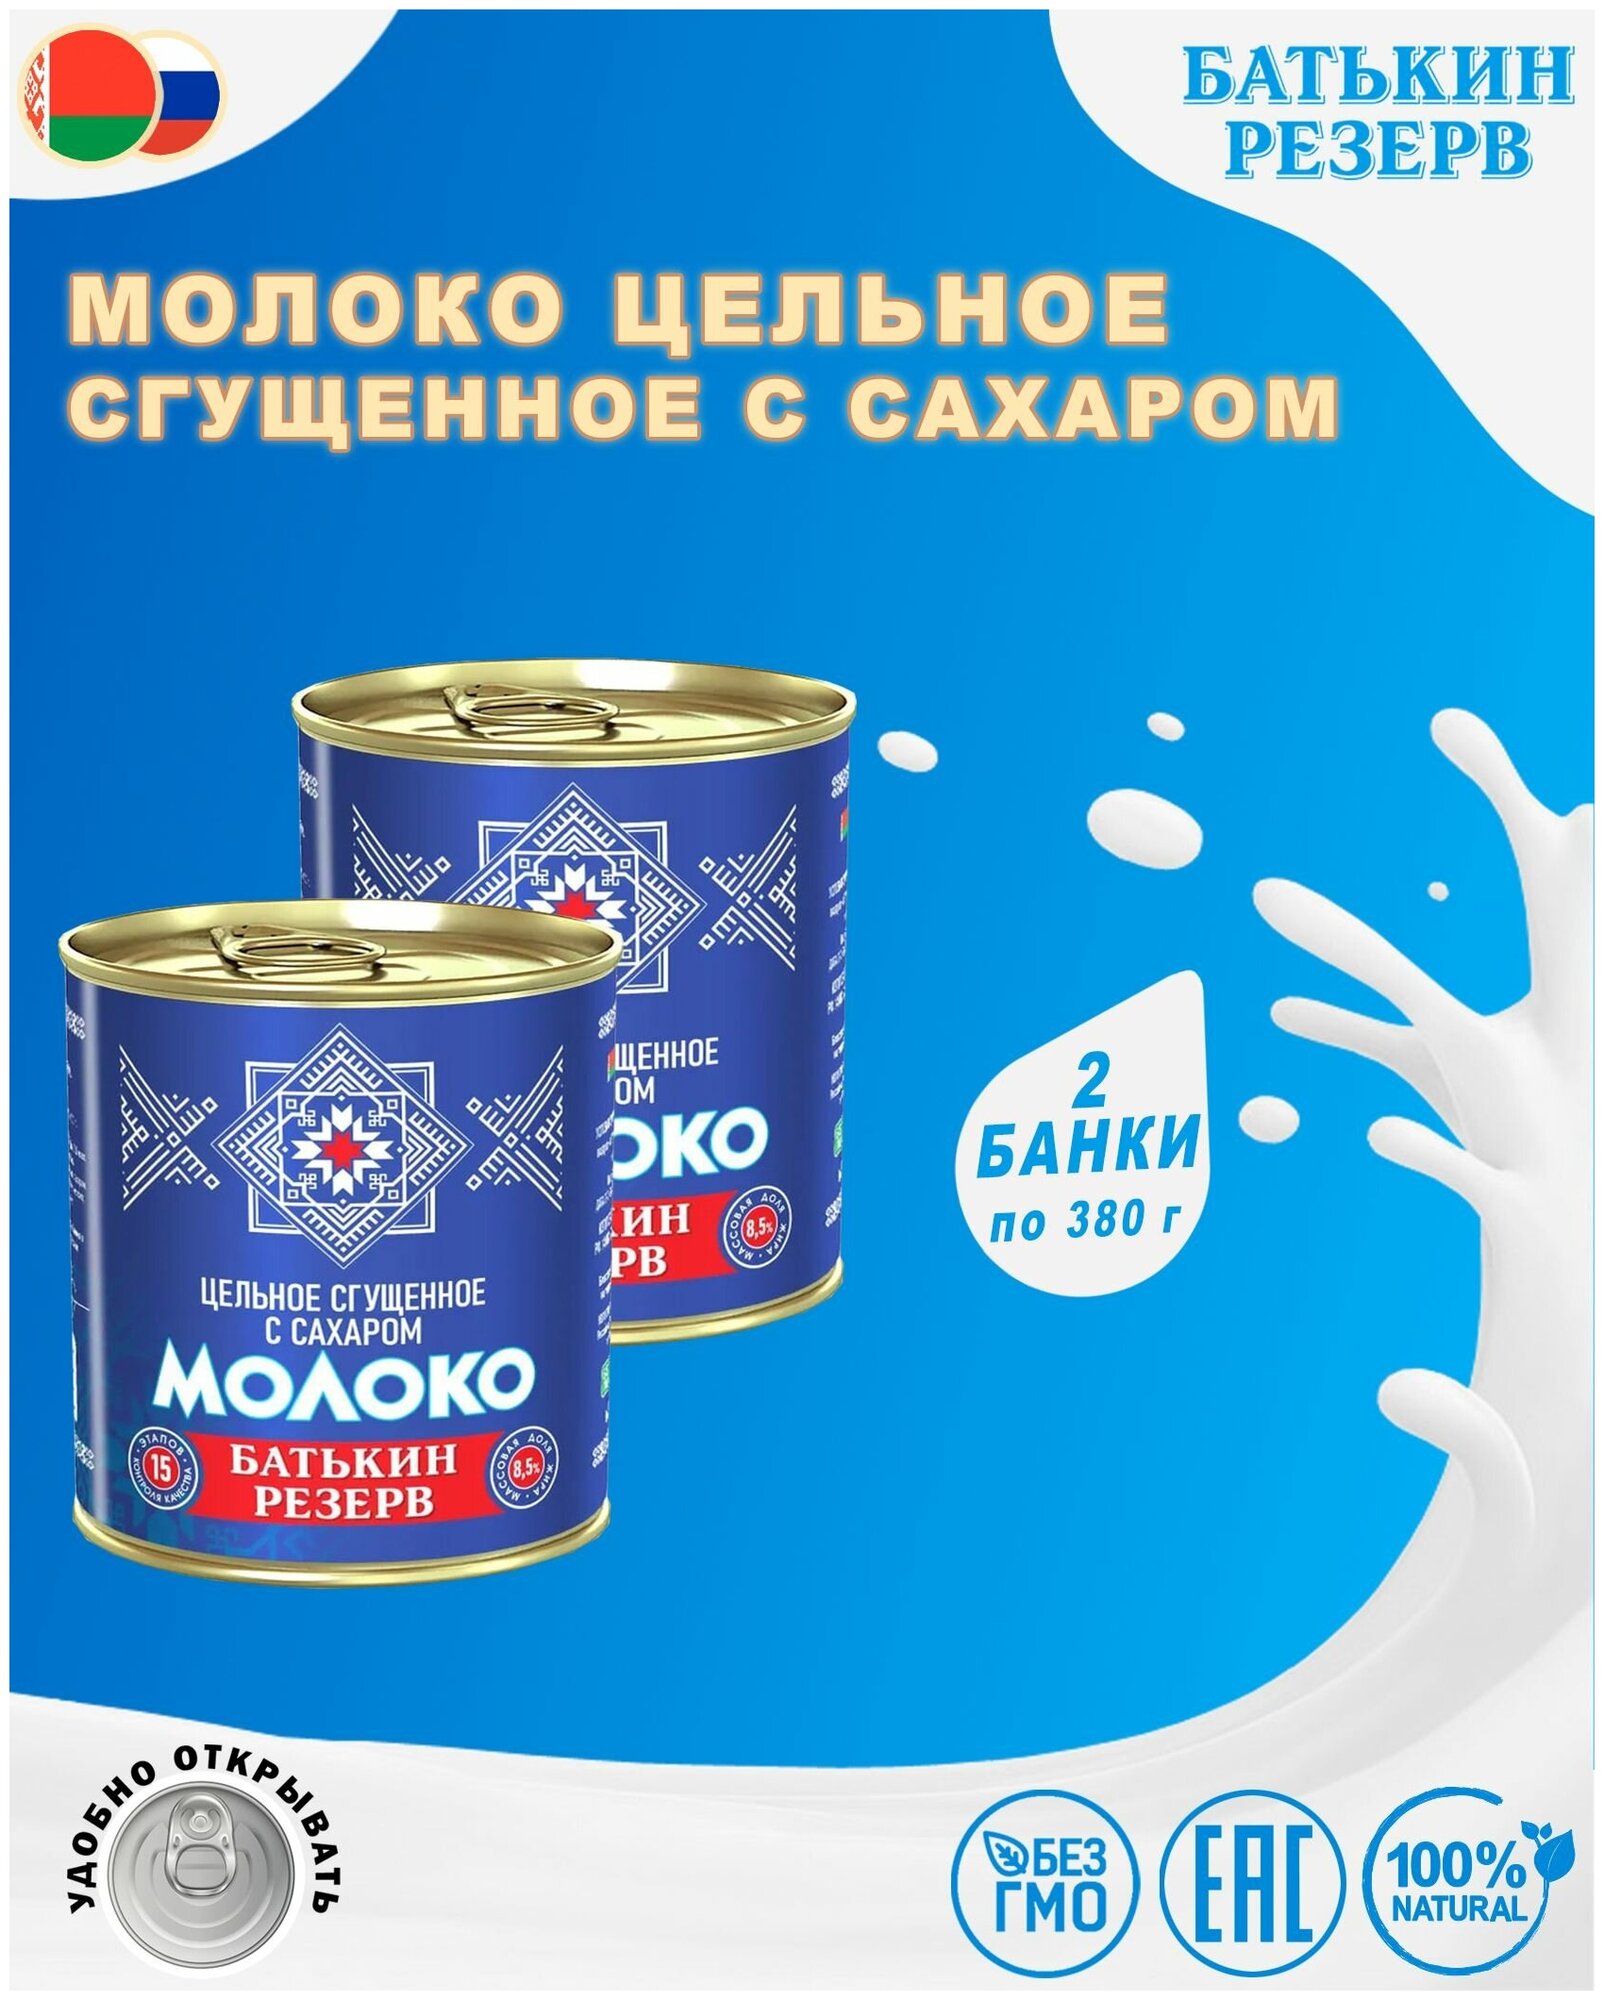 Молоко цельное сгущенное с сахаром, Батькин резерв, ГОСТ, 2 шт. по 380 г